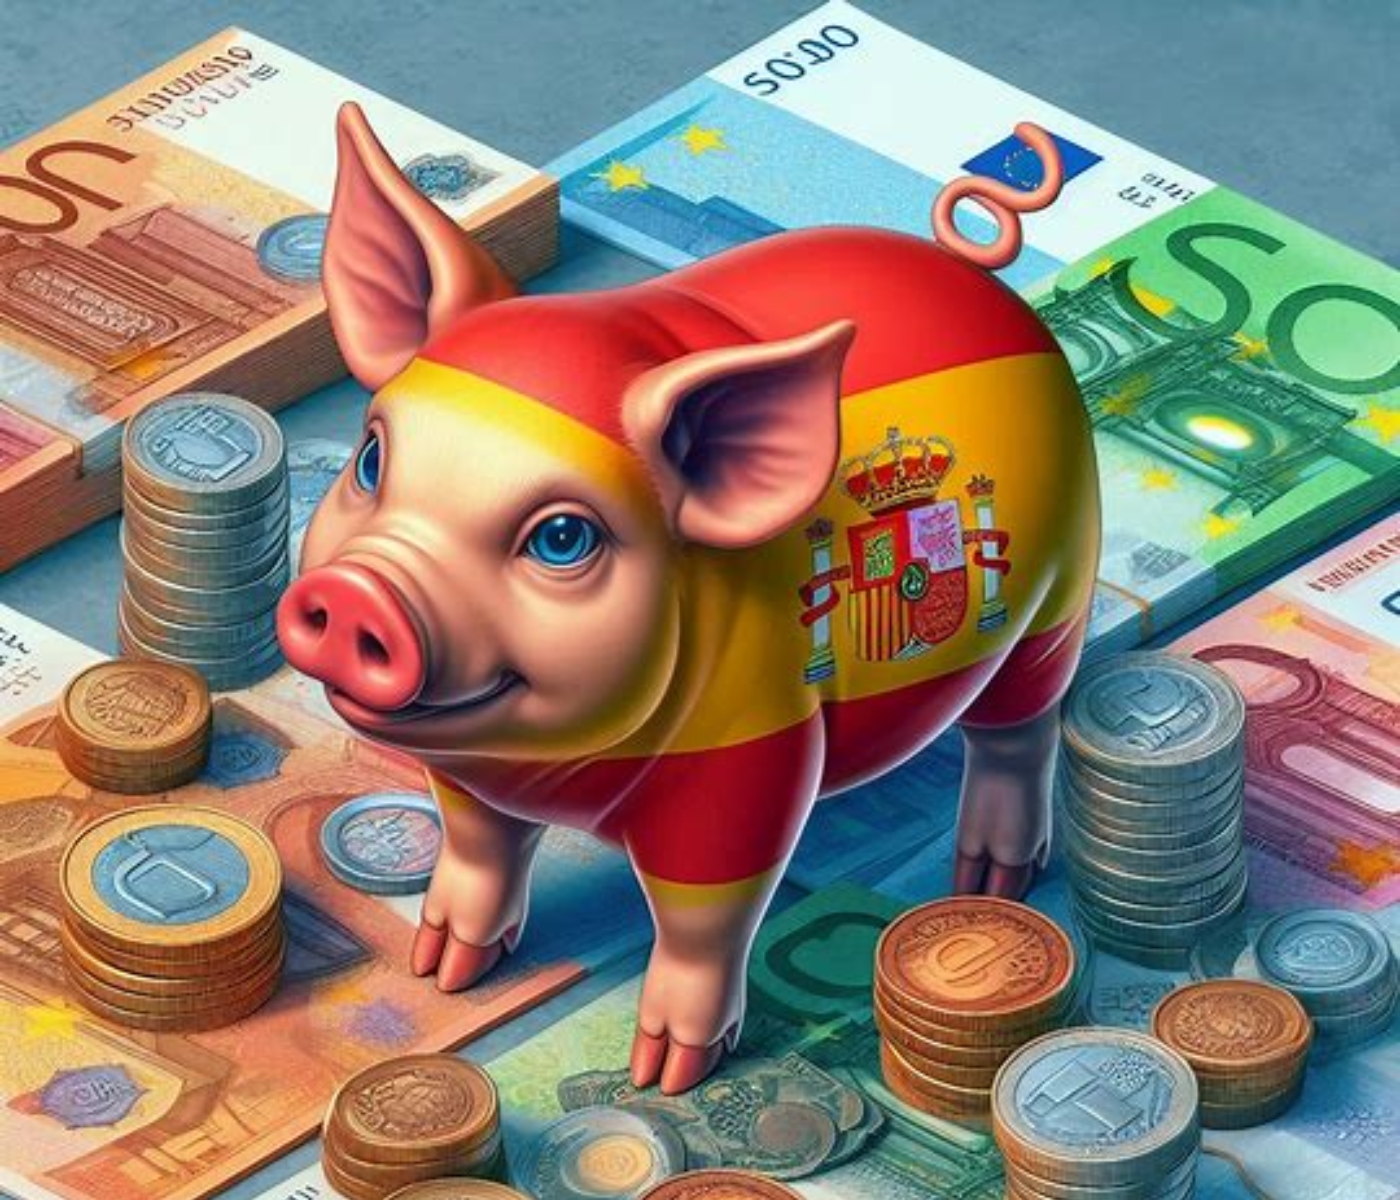 La facturación del sector porcino español asciende a los 38.000 millones de euros anuales